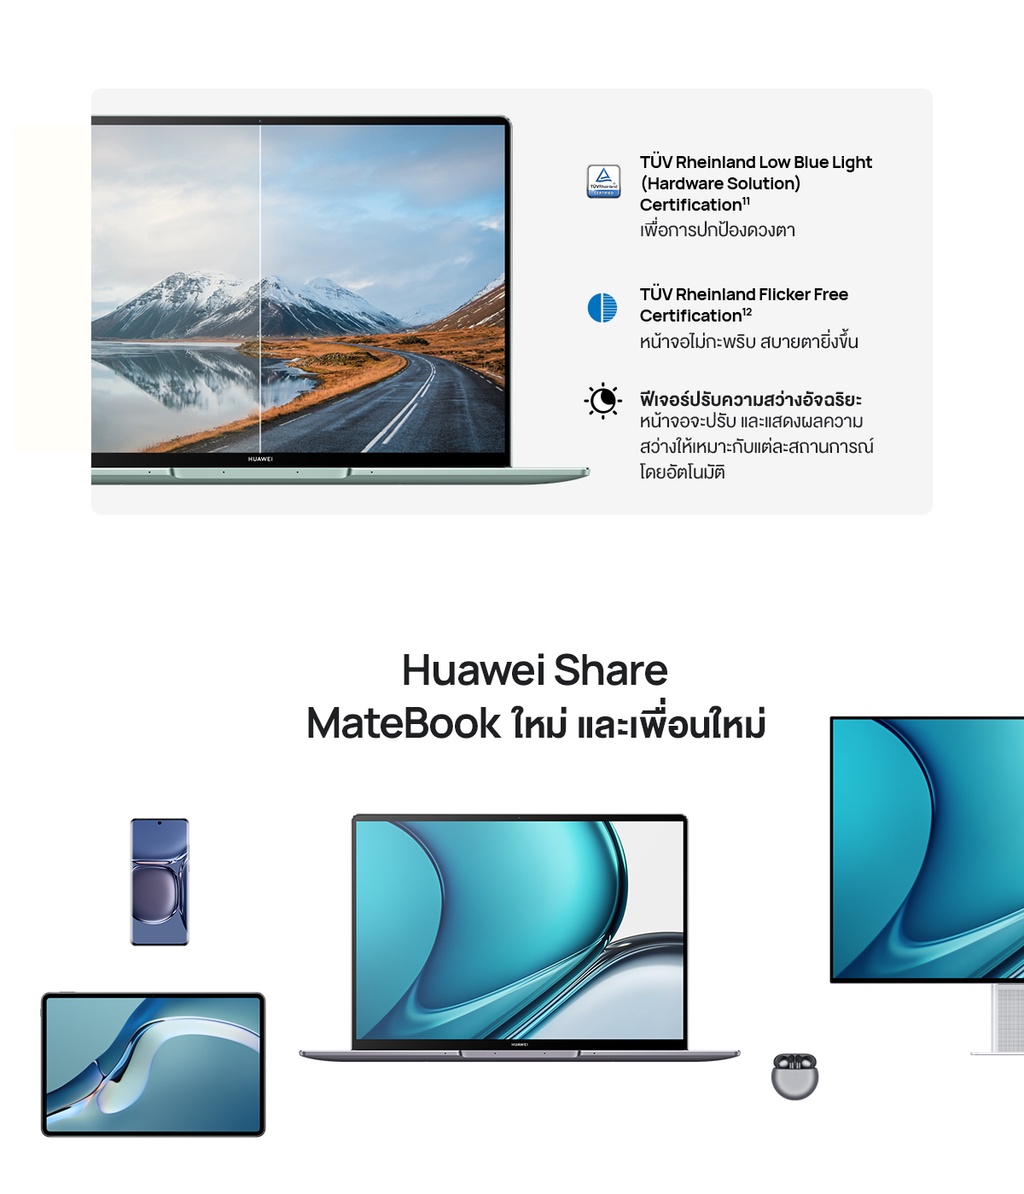 มุมมองเพิ่มเติมของสินค้า HUAWEI MateBook 14s แล็ปท็อป  11th Gen H Series & Touch Screen Intel 2.5K Huawei FullView Display มาพร้อมกับอัตรารีเฟรชหน้าจอ90Hz ร้านค้าอย่างเป็นทาง